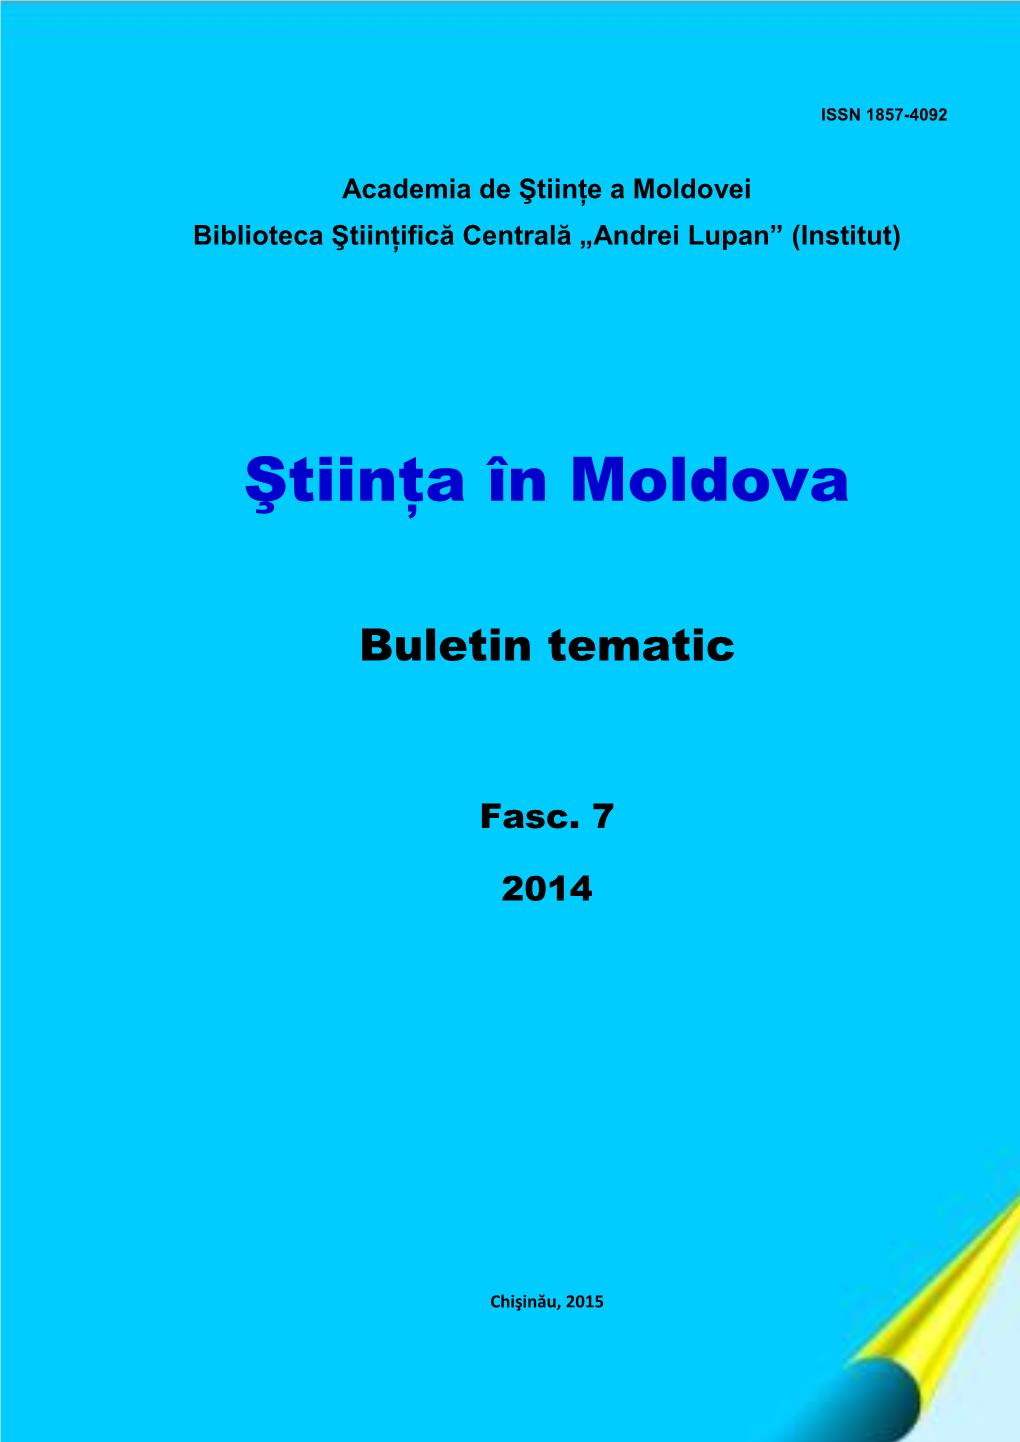 Science in Moldova 2014